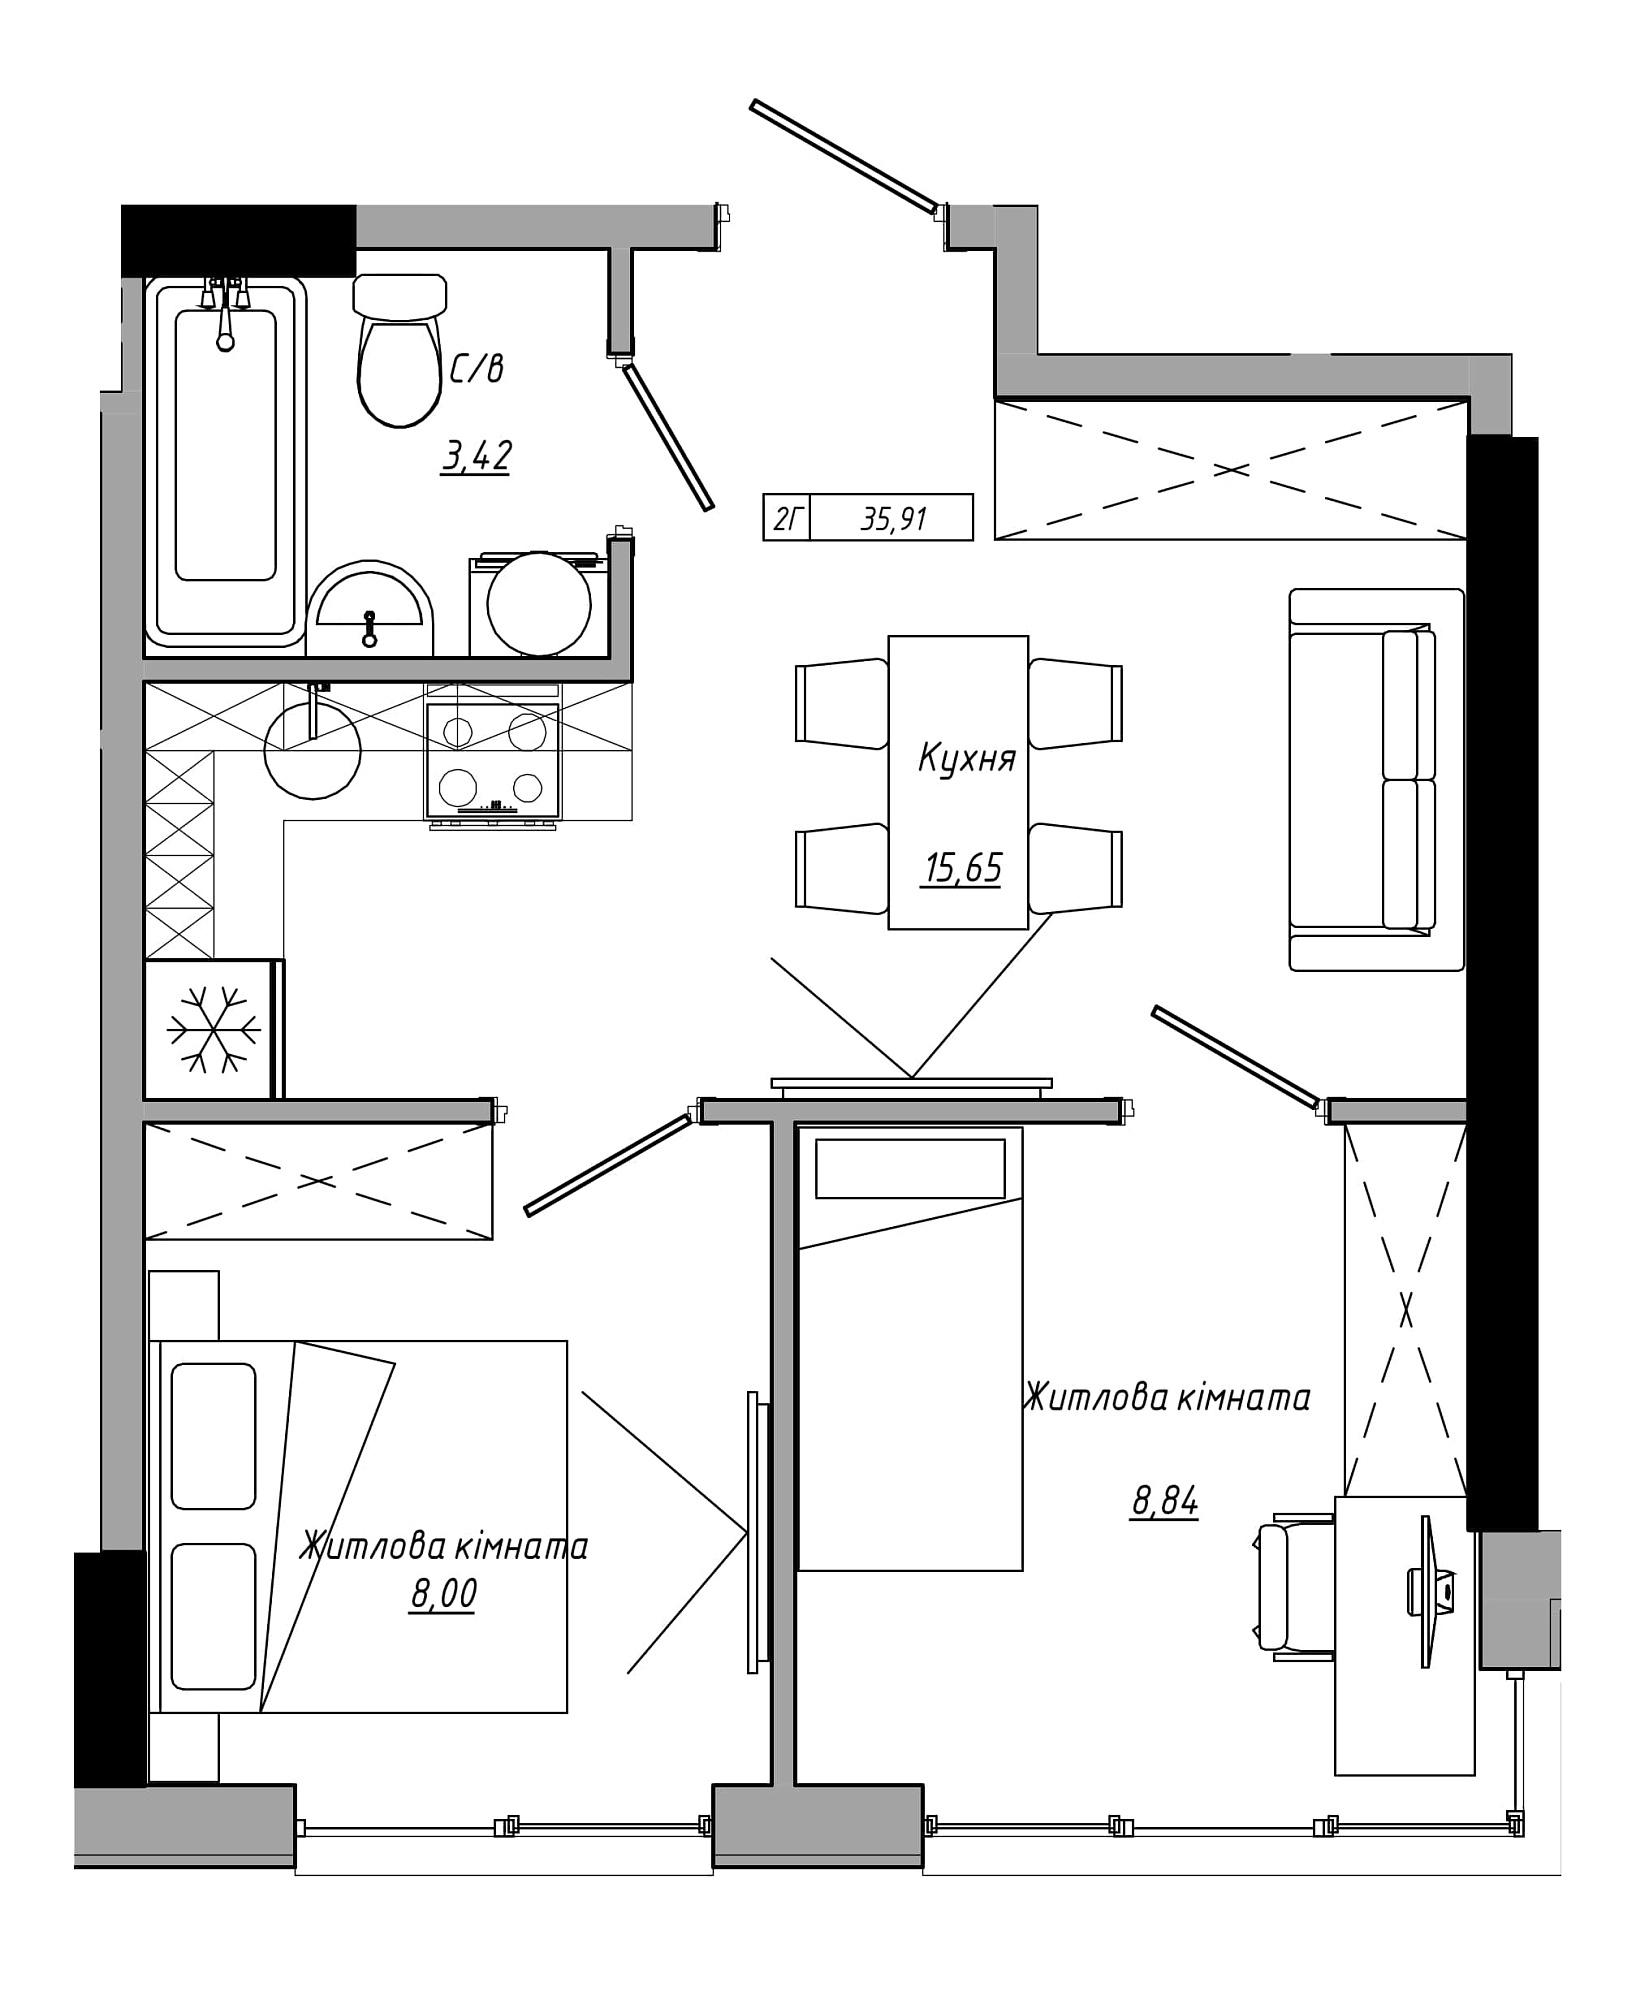 Планування 2-к квартира площею 35.91м2, AB-21-08/00019.